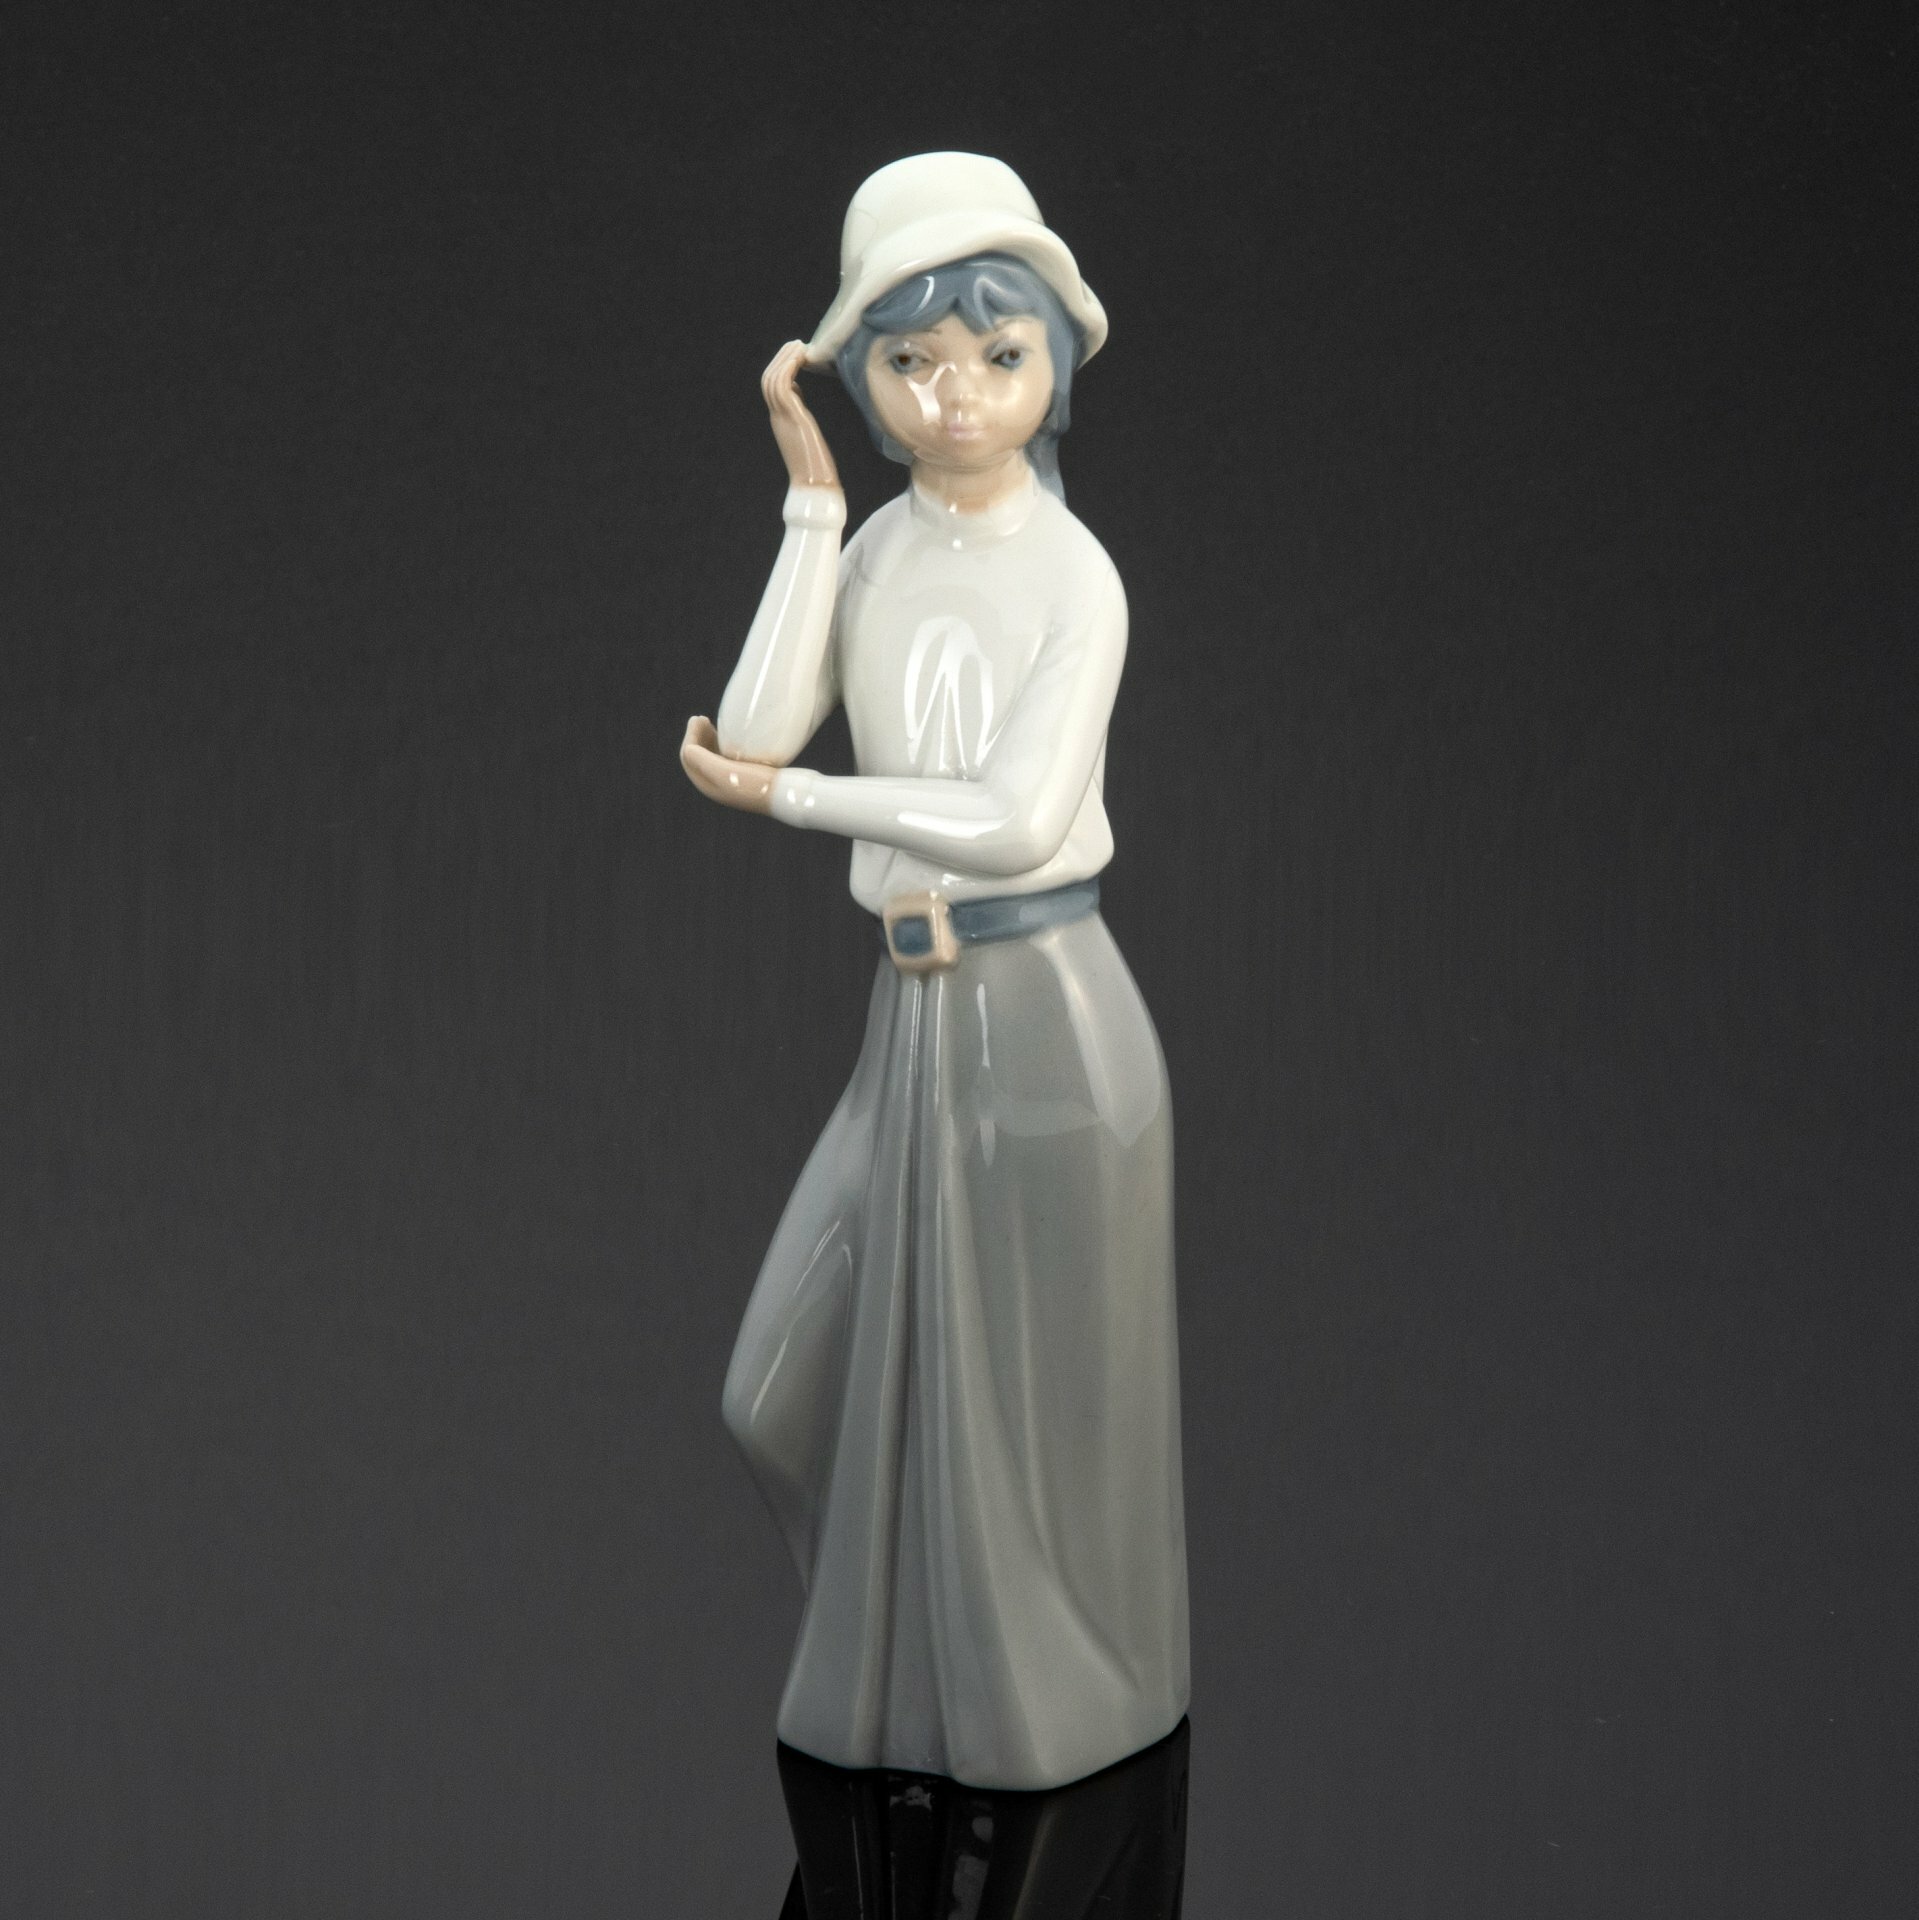 Винтажная статуэтка в стилистике Lladro "Девушка в шляпке", фарфор, роспись, Casades